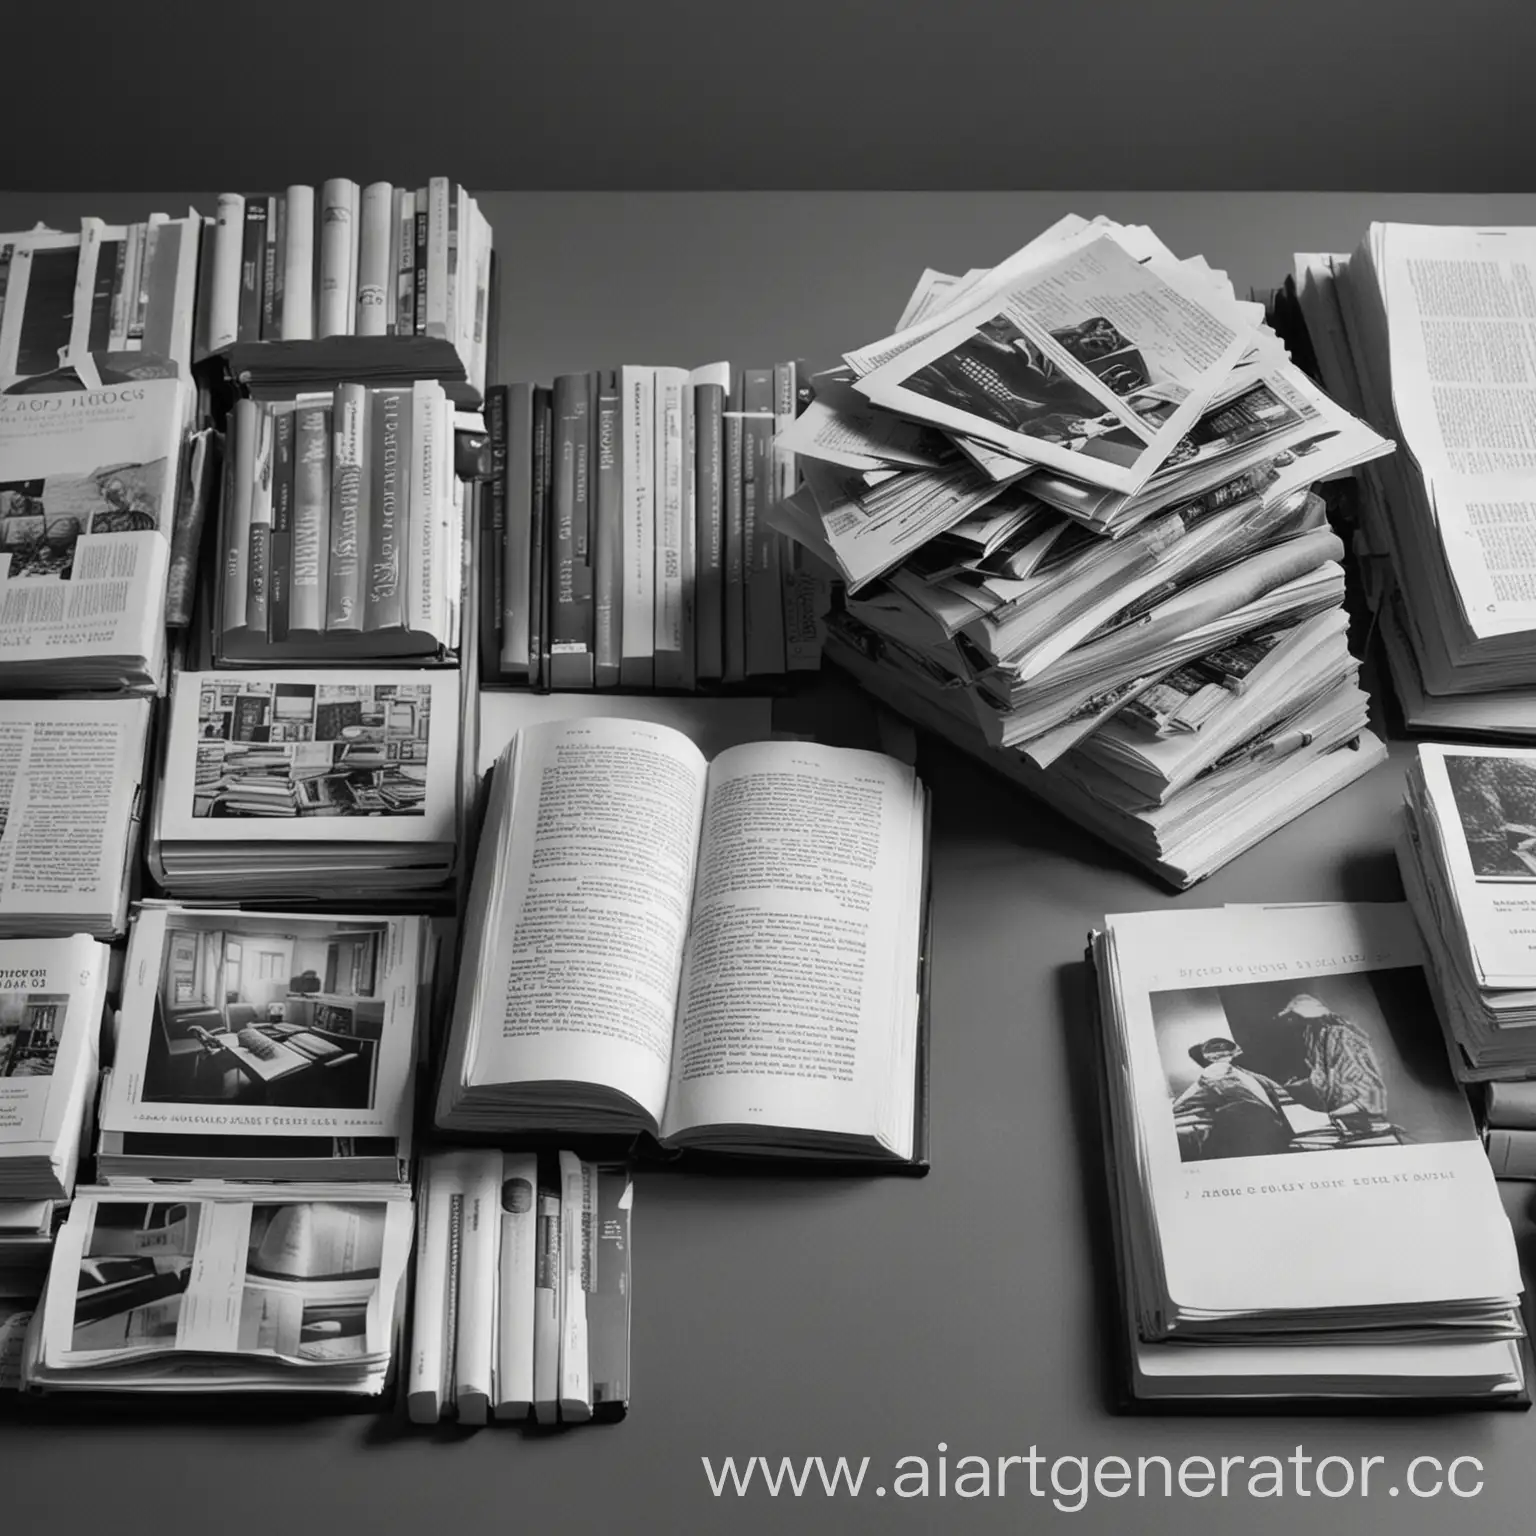 Сгенерируй картинку на тему - Книги и журналы. Стиль - серый, изображение - квадратное. Без текста.